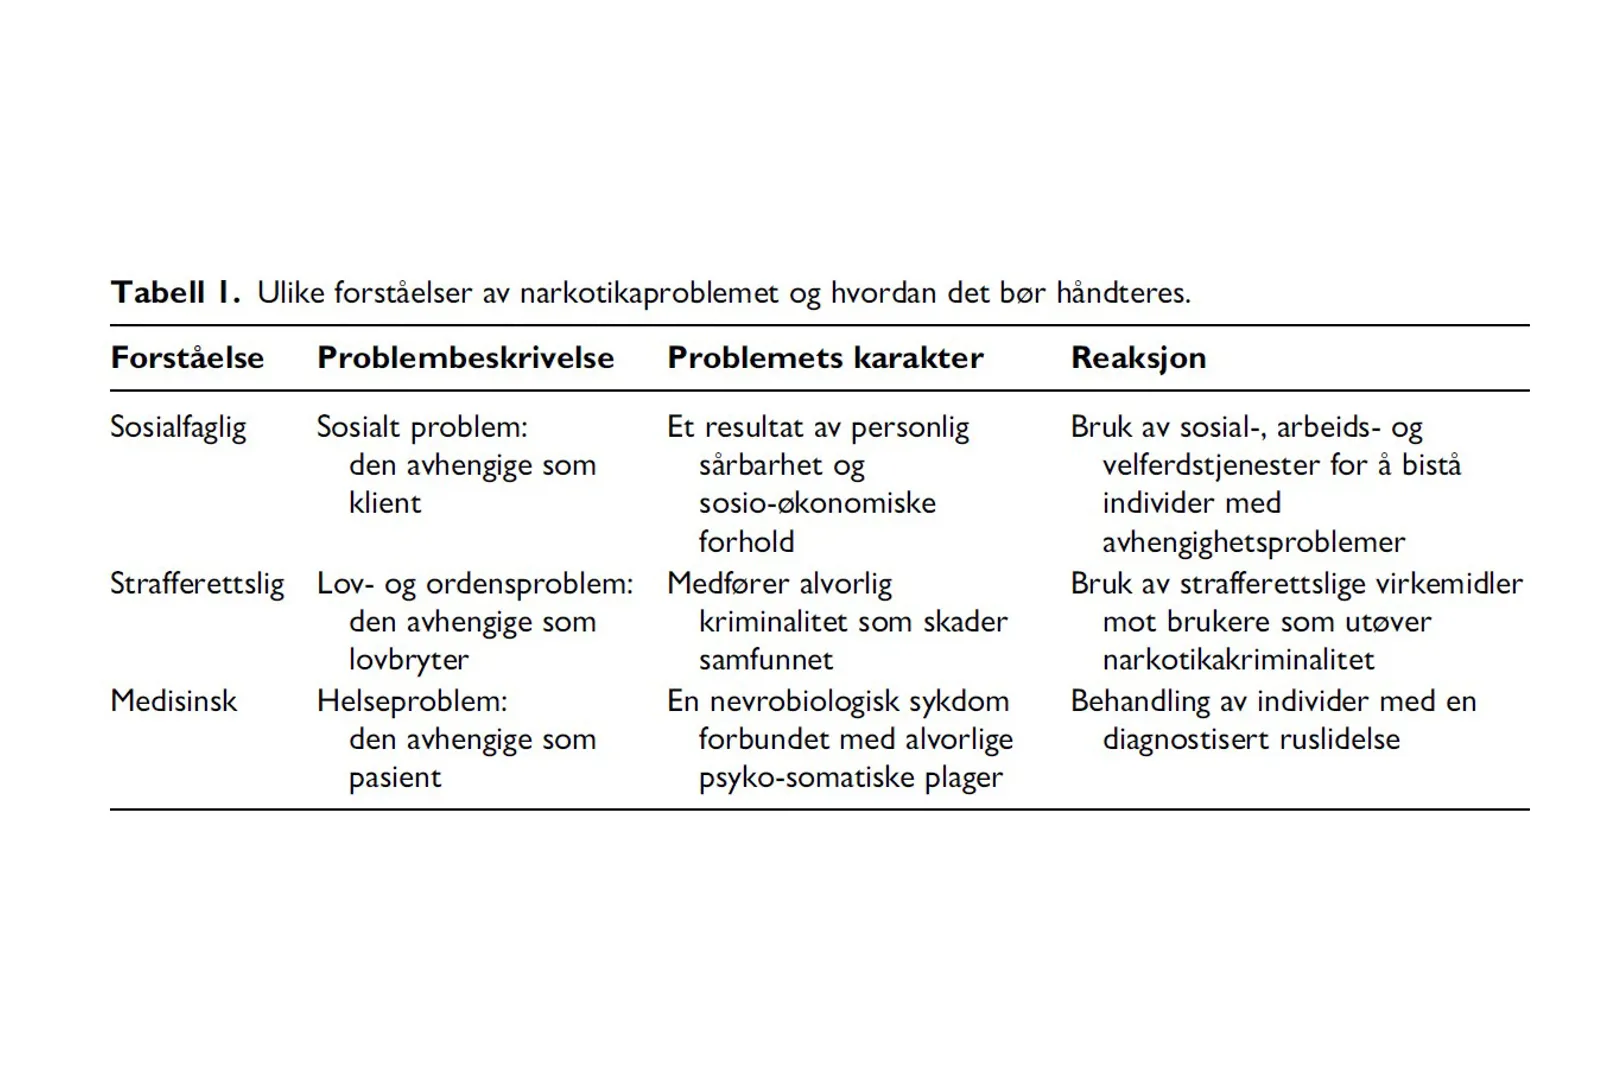 Tabell 1 - ulike forståelser av narkotikaproblemet og hvordan det bør håndteres